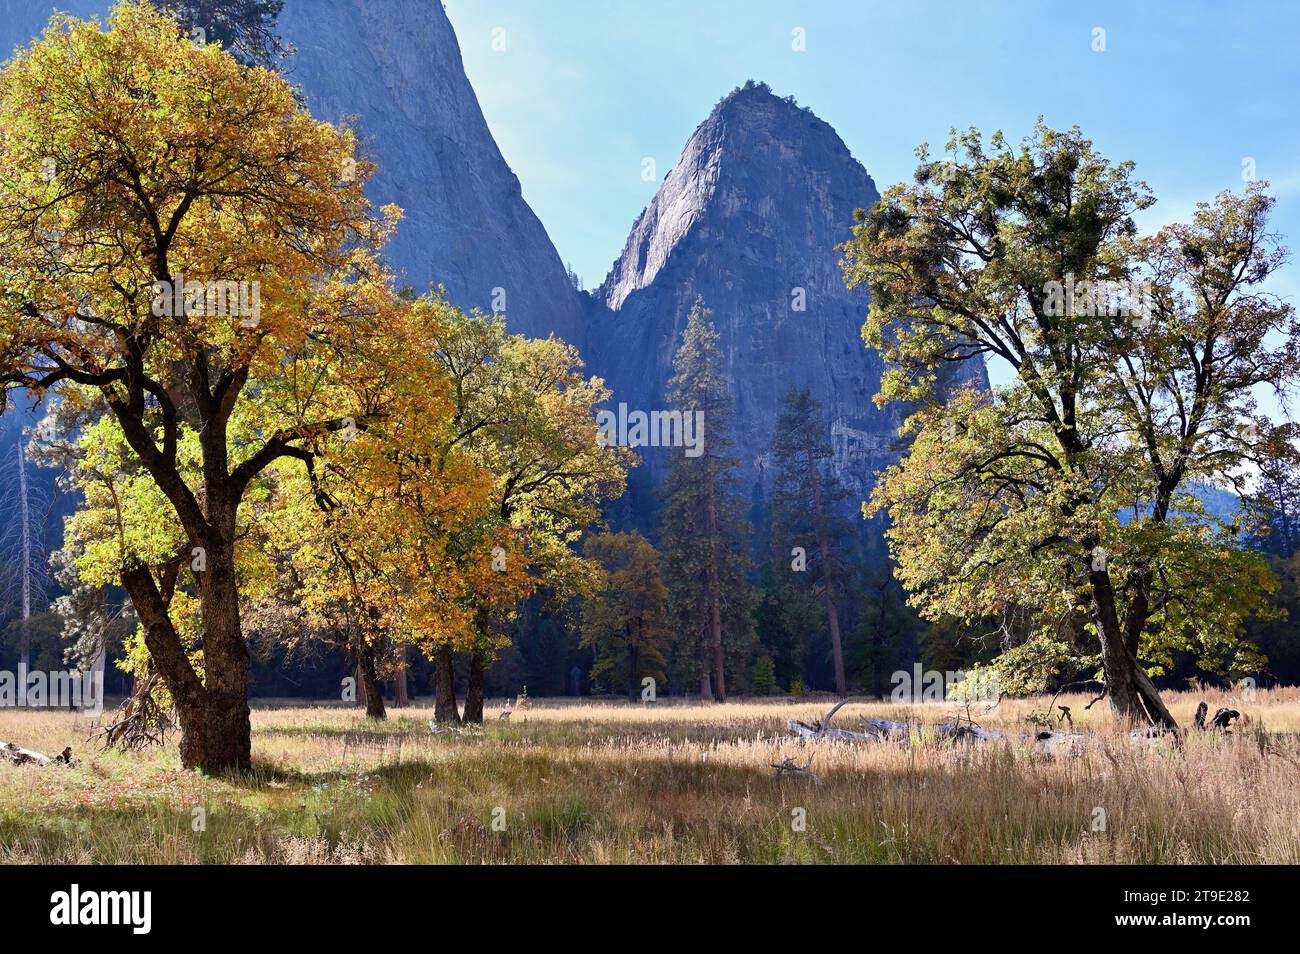 Parc national de Yosemite, Californie, États-Unis. Les arbres montrent des signes d'automne lorsqu'ils atteignent le ciel depuis le sol de la vallée de Yosemite. Banque D'Images